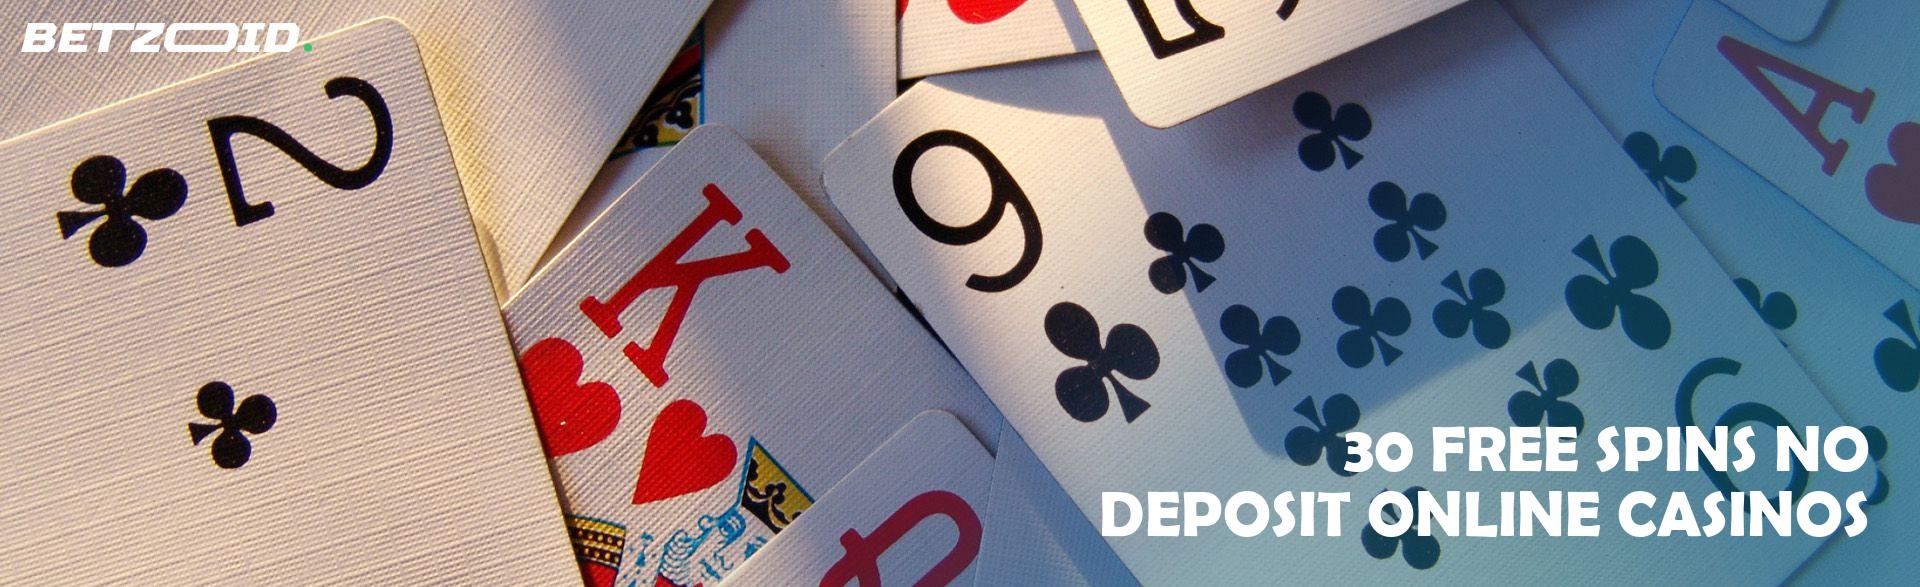 30 Free Spins No Deposit Online Casinos.